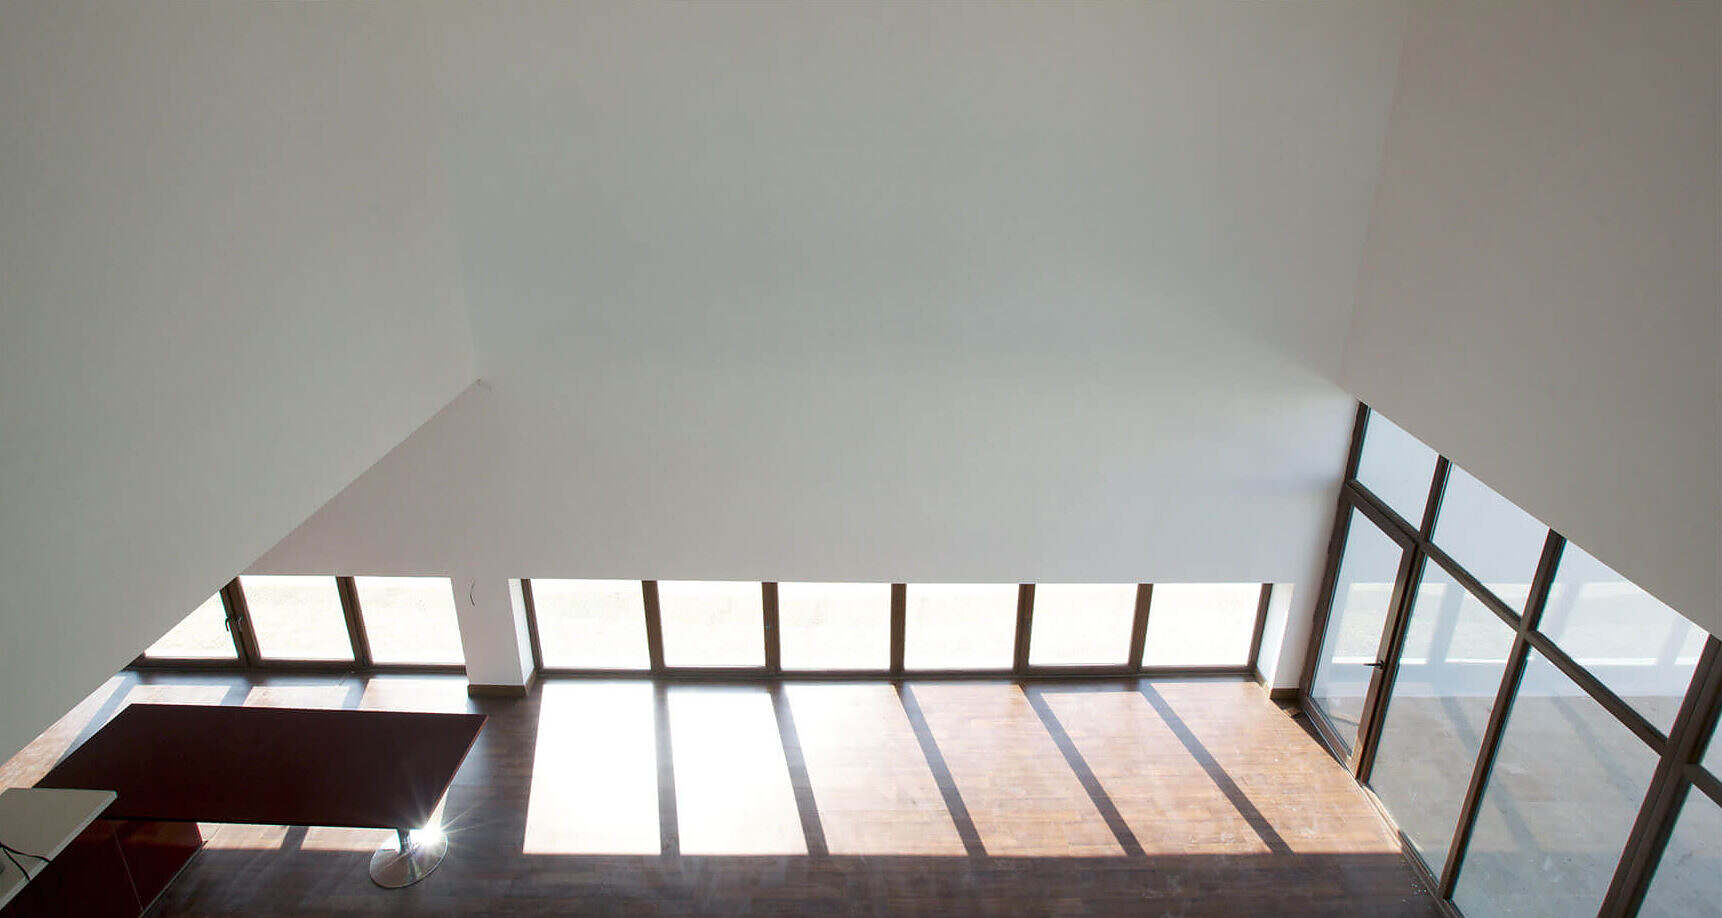 پرسپکتیو داخلی ویلای شمس با دید از طبقه اول به همکف